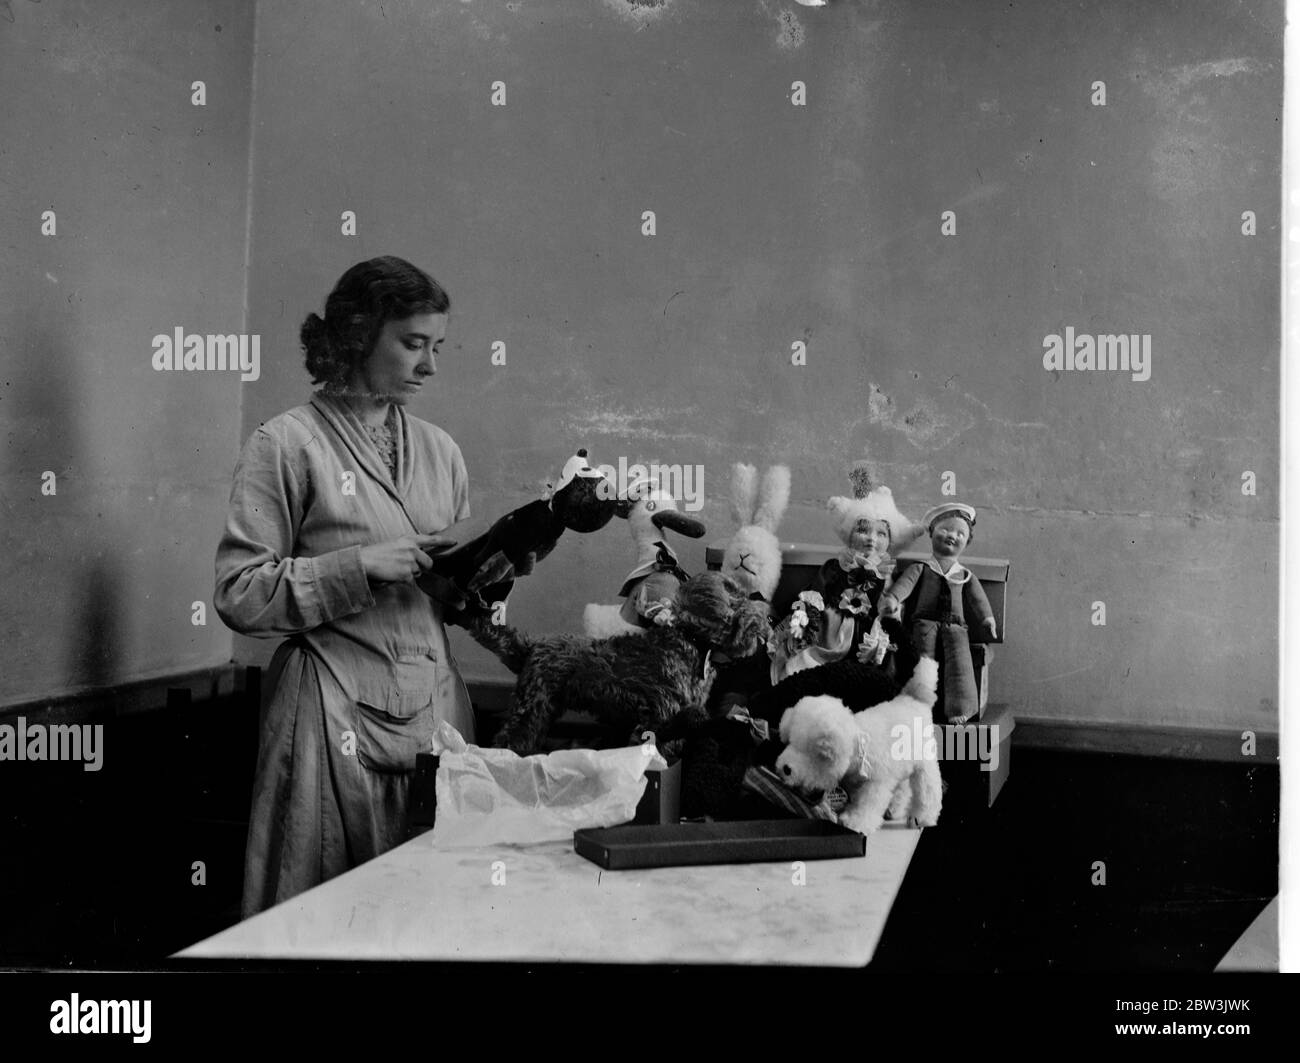 Bringen Film Cartoon Favoriten zu "Leben für weihnachten" . Berühmte Charaktere der Film-Cartoons einschließlich Donald Duck und Popeye wurden von den Lumpenpuppen-Herstellern verwendet, um Neuheiten für den Weihnachtsmarkt bieten . Foto zeigt, Verpackung Lappen Puppen für den Weihnachtsmarkt in einer Londoner Fabrik. 16. November 1935 Stockfoto